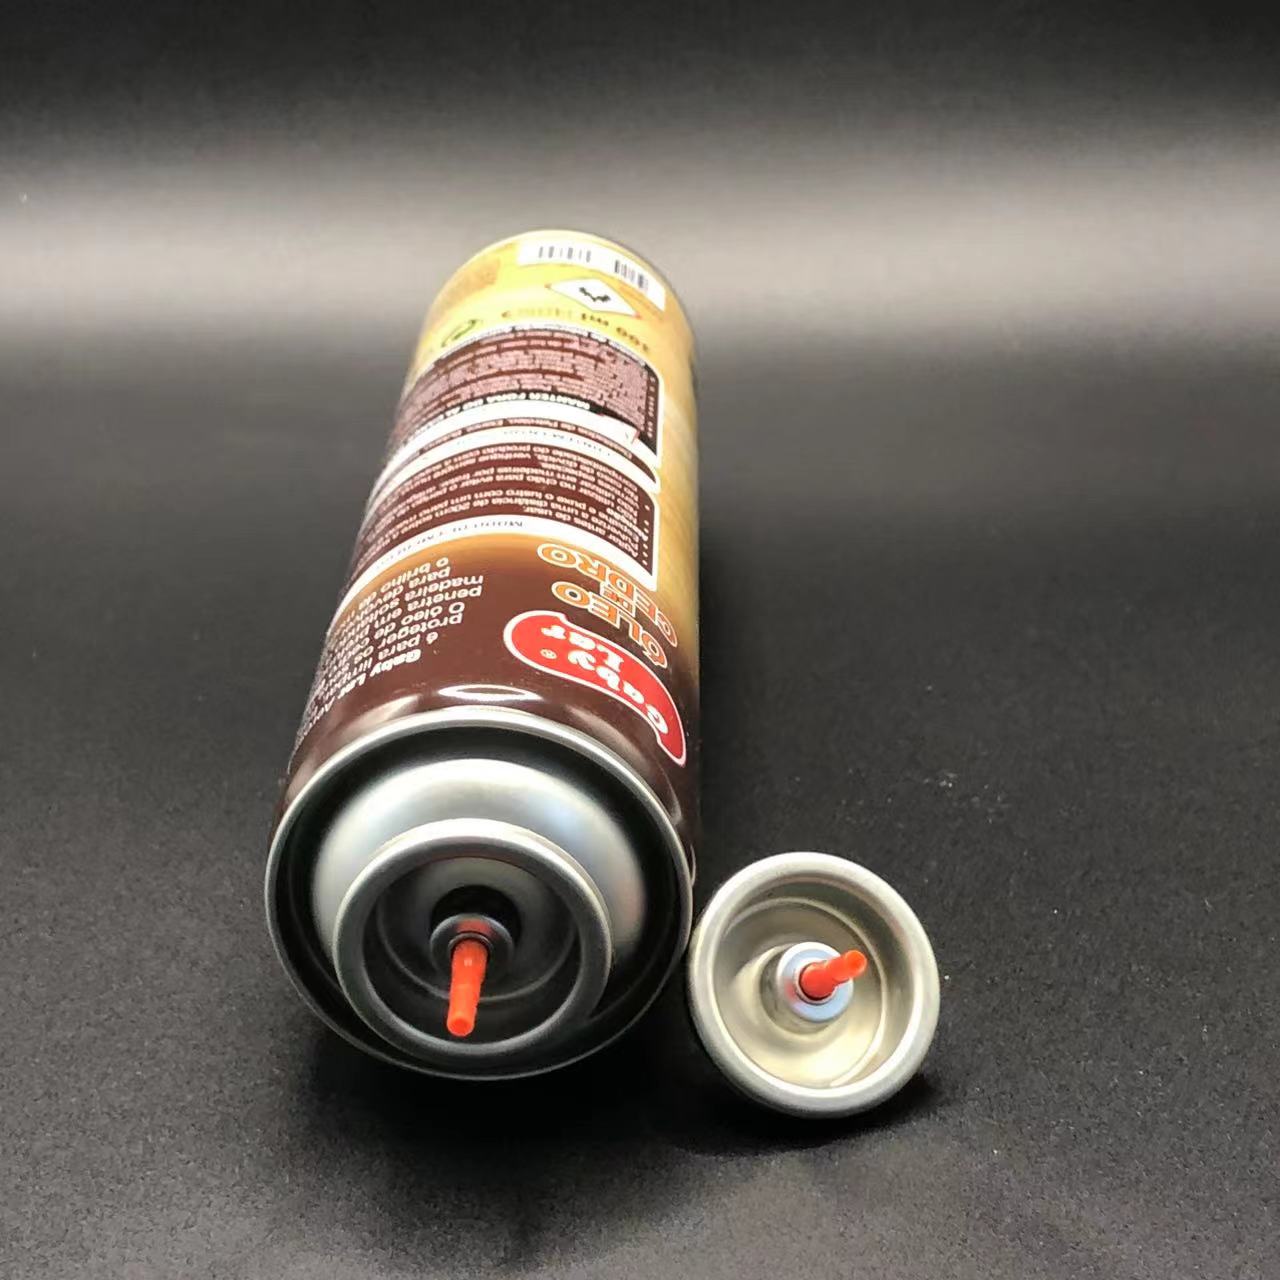 Universal Butane Gas Lighter Refill Valve Kit Versatile Solution for Multiple Lighter Models